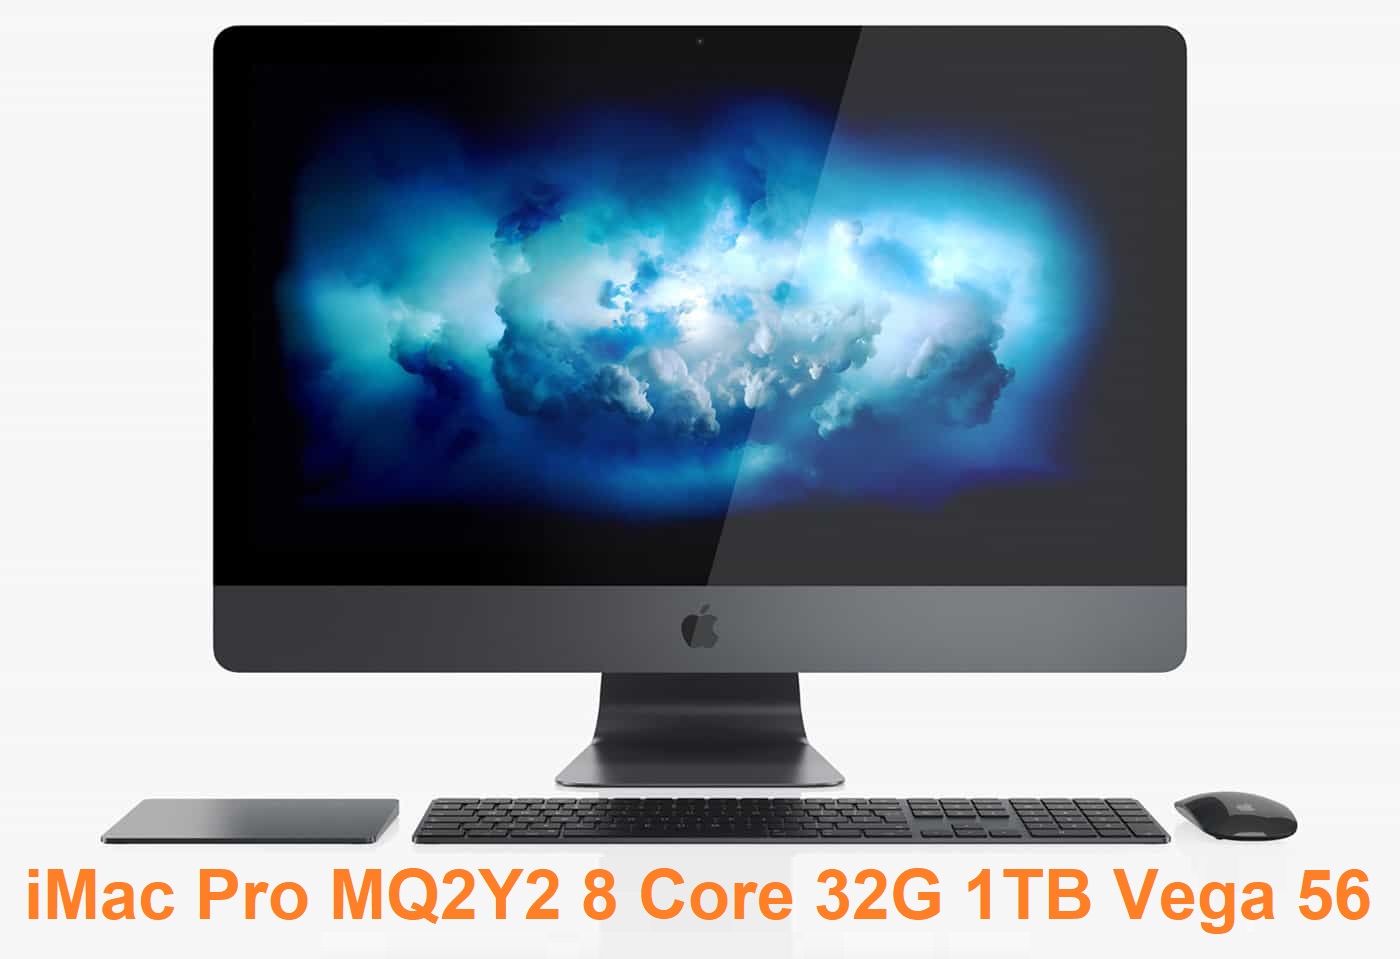 iMac Pro MQ2Y2 8 Core 32G 1TB Vega 56